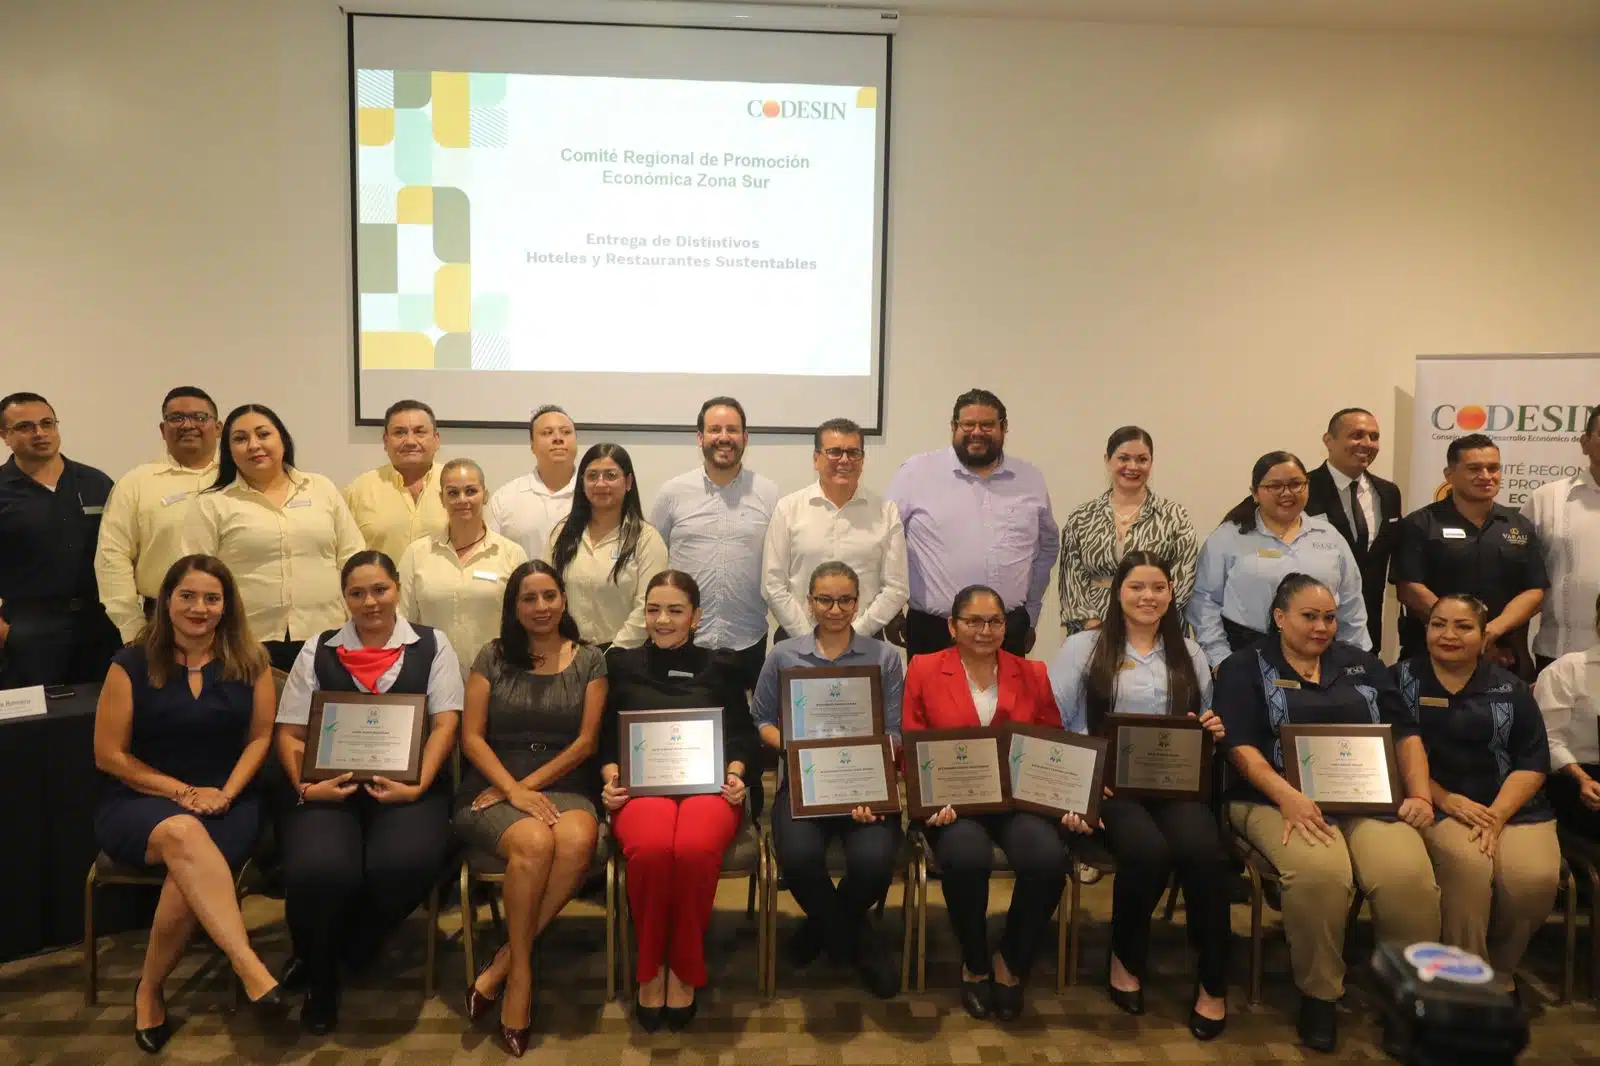 Dirigentes de hoteles y restaurantes de Mazatlán con su distintivo otorgado por Codesin